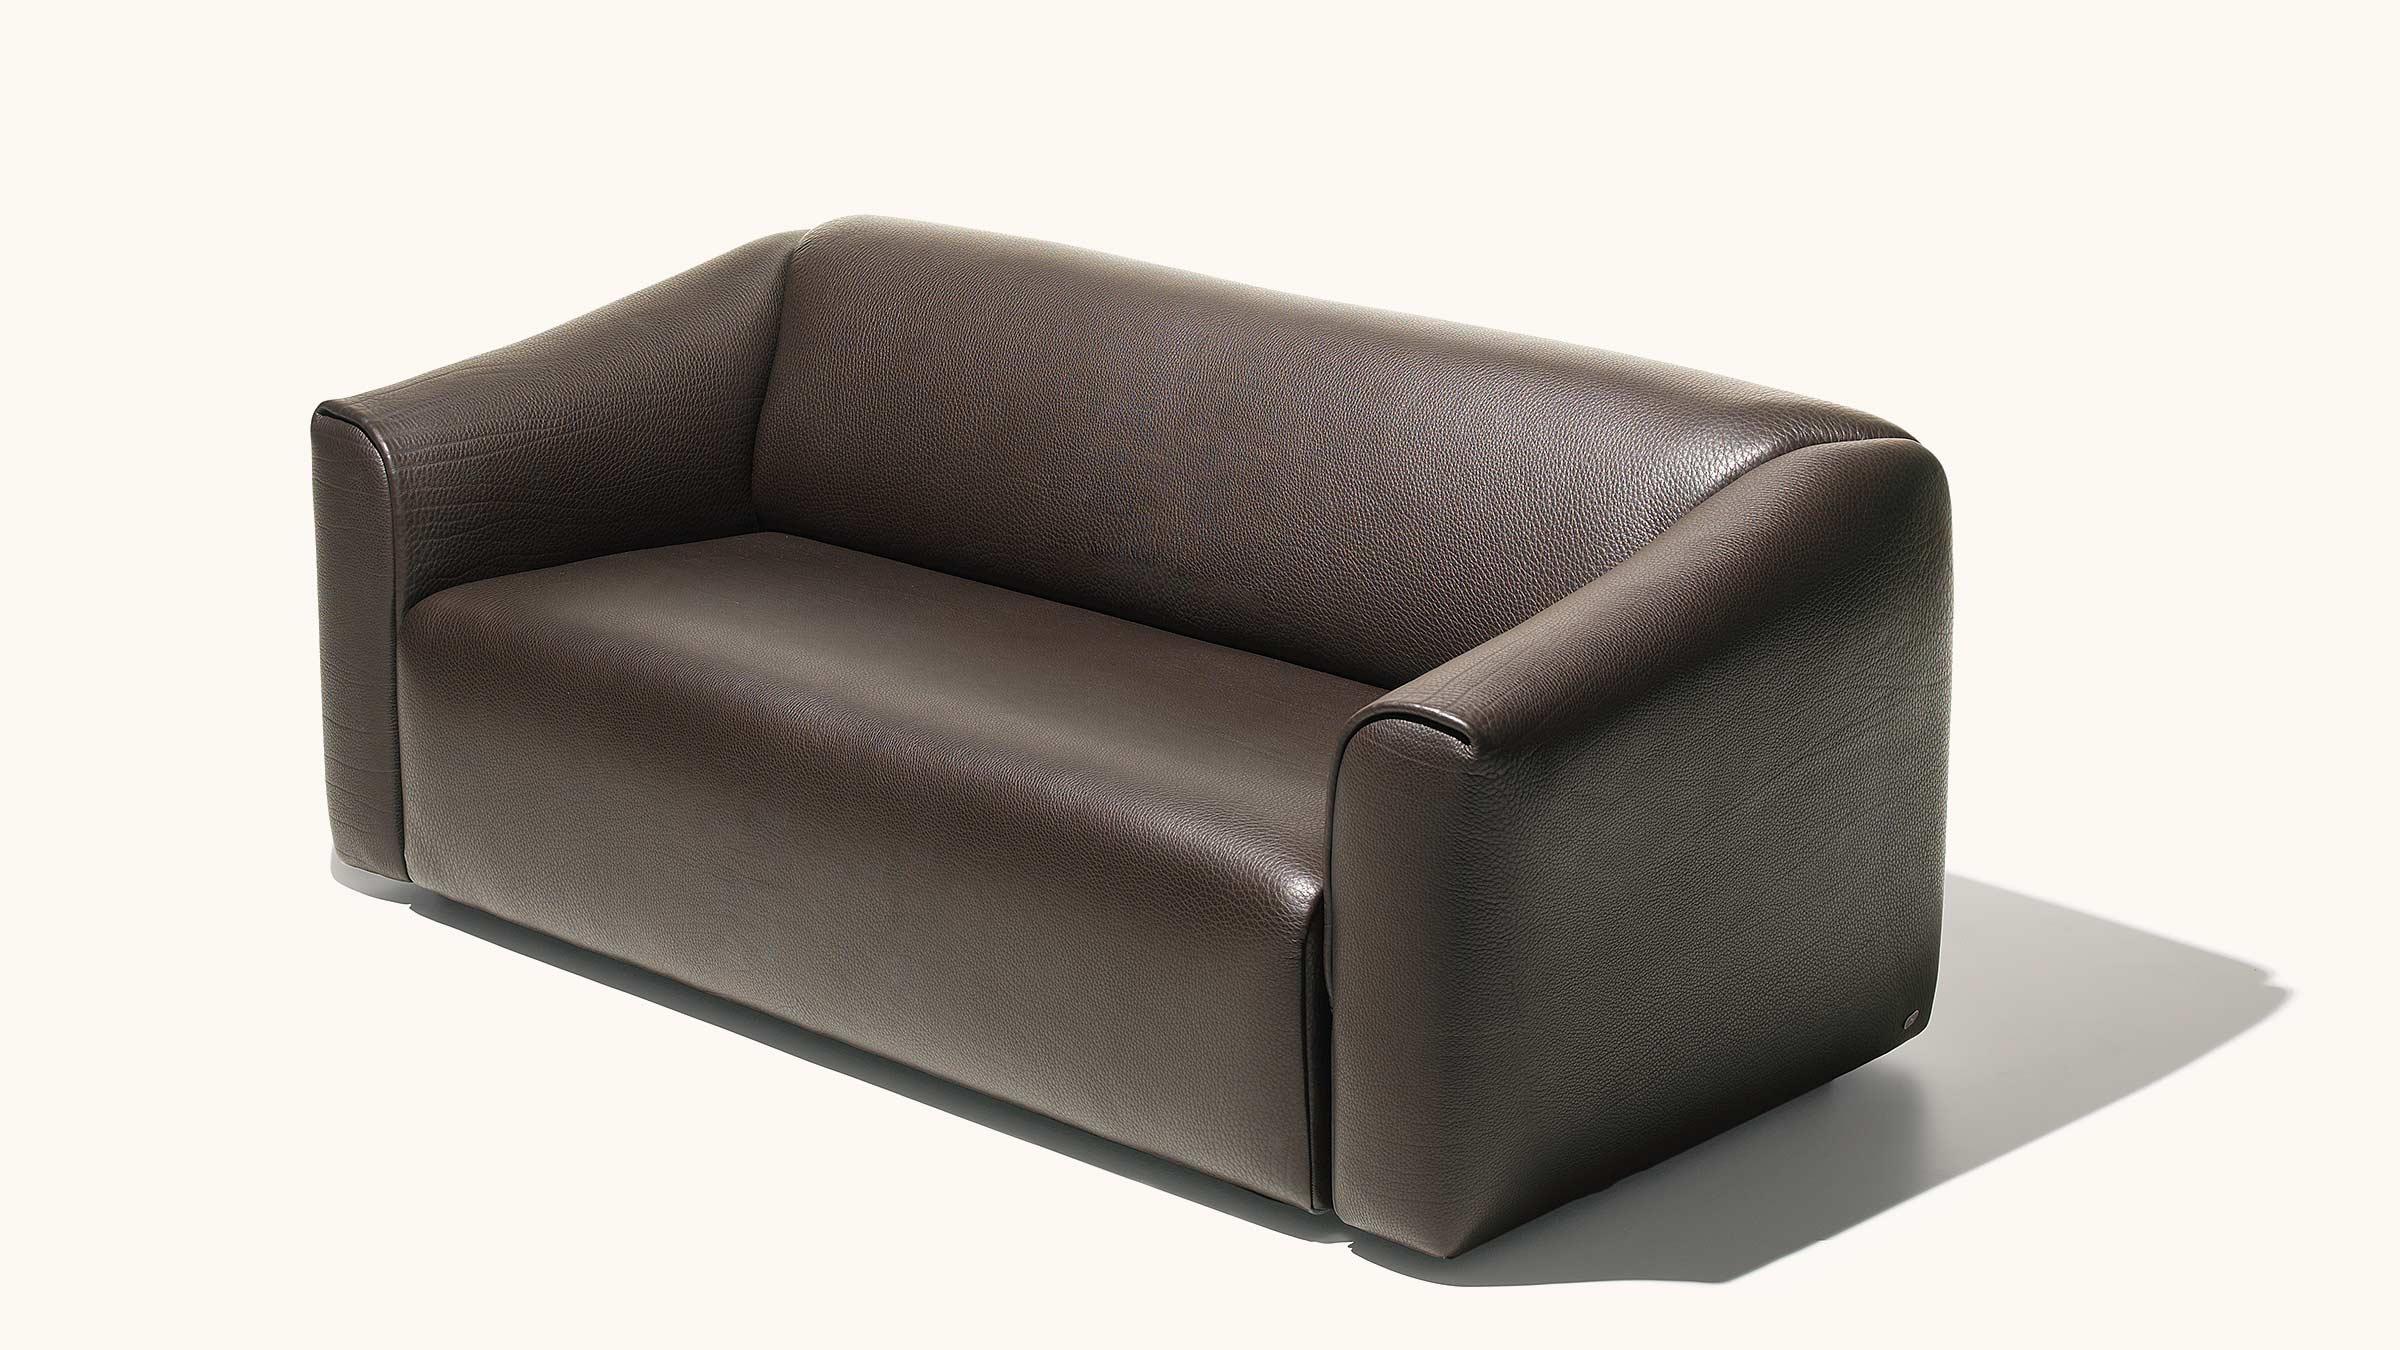 DS-47 ist als zwei- und dreisitziges Sofa sowie als Sessel und Hocker erhältlich. 5 mm dickes NECK-Leder, erkennbar an den charakteristischen Fettfalten, verleiht ihm einen unverwechselbaren Ausdruck, der es leicht erkennbar macht. Für alle Teile,